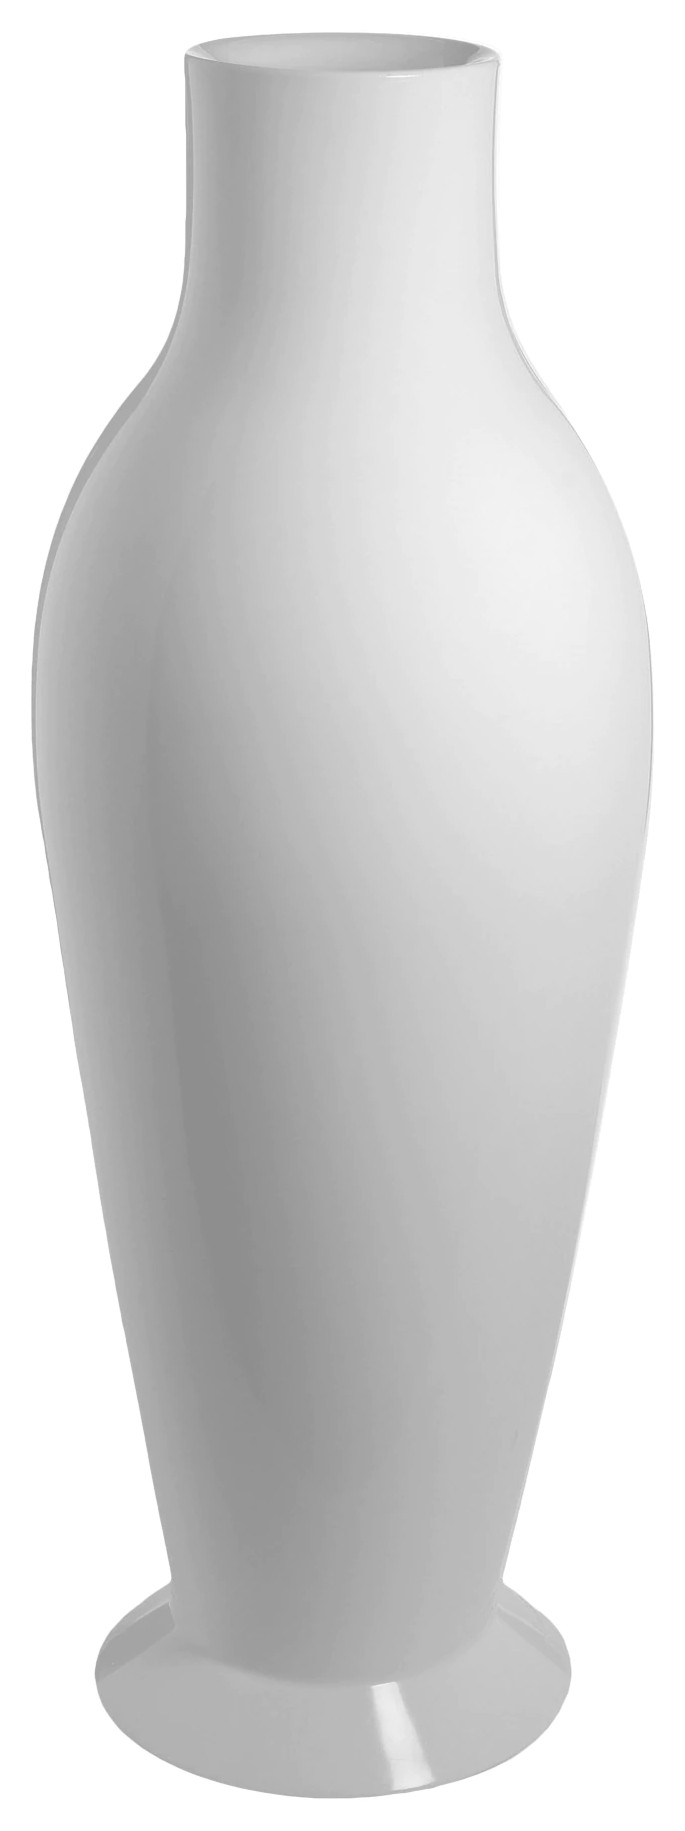 Vaza Kartell Misses Flower Power design Philippe Stark & Eugeni Quitllet h164cm alb lucios Kartell